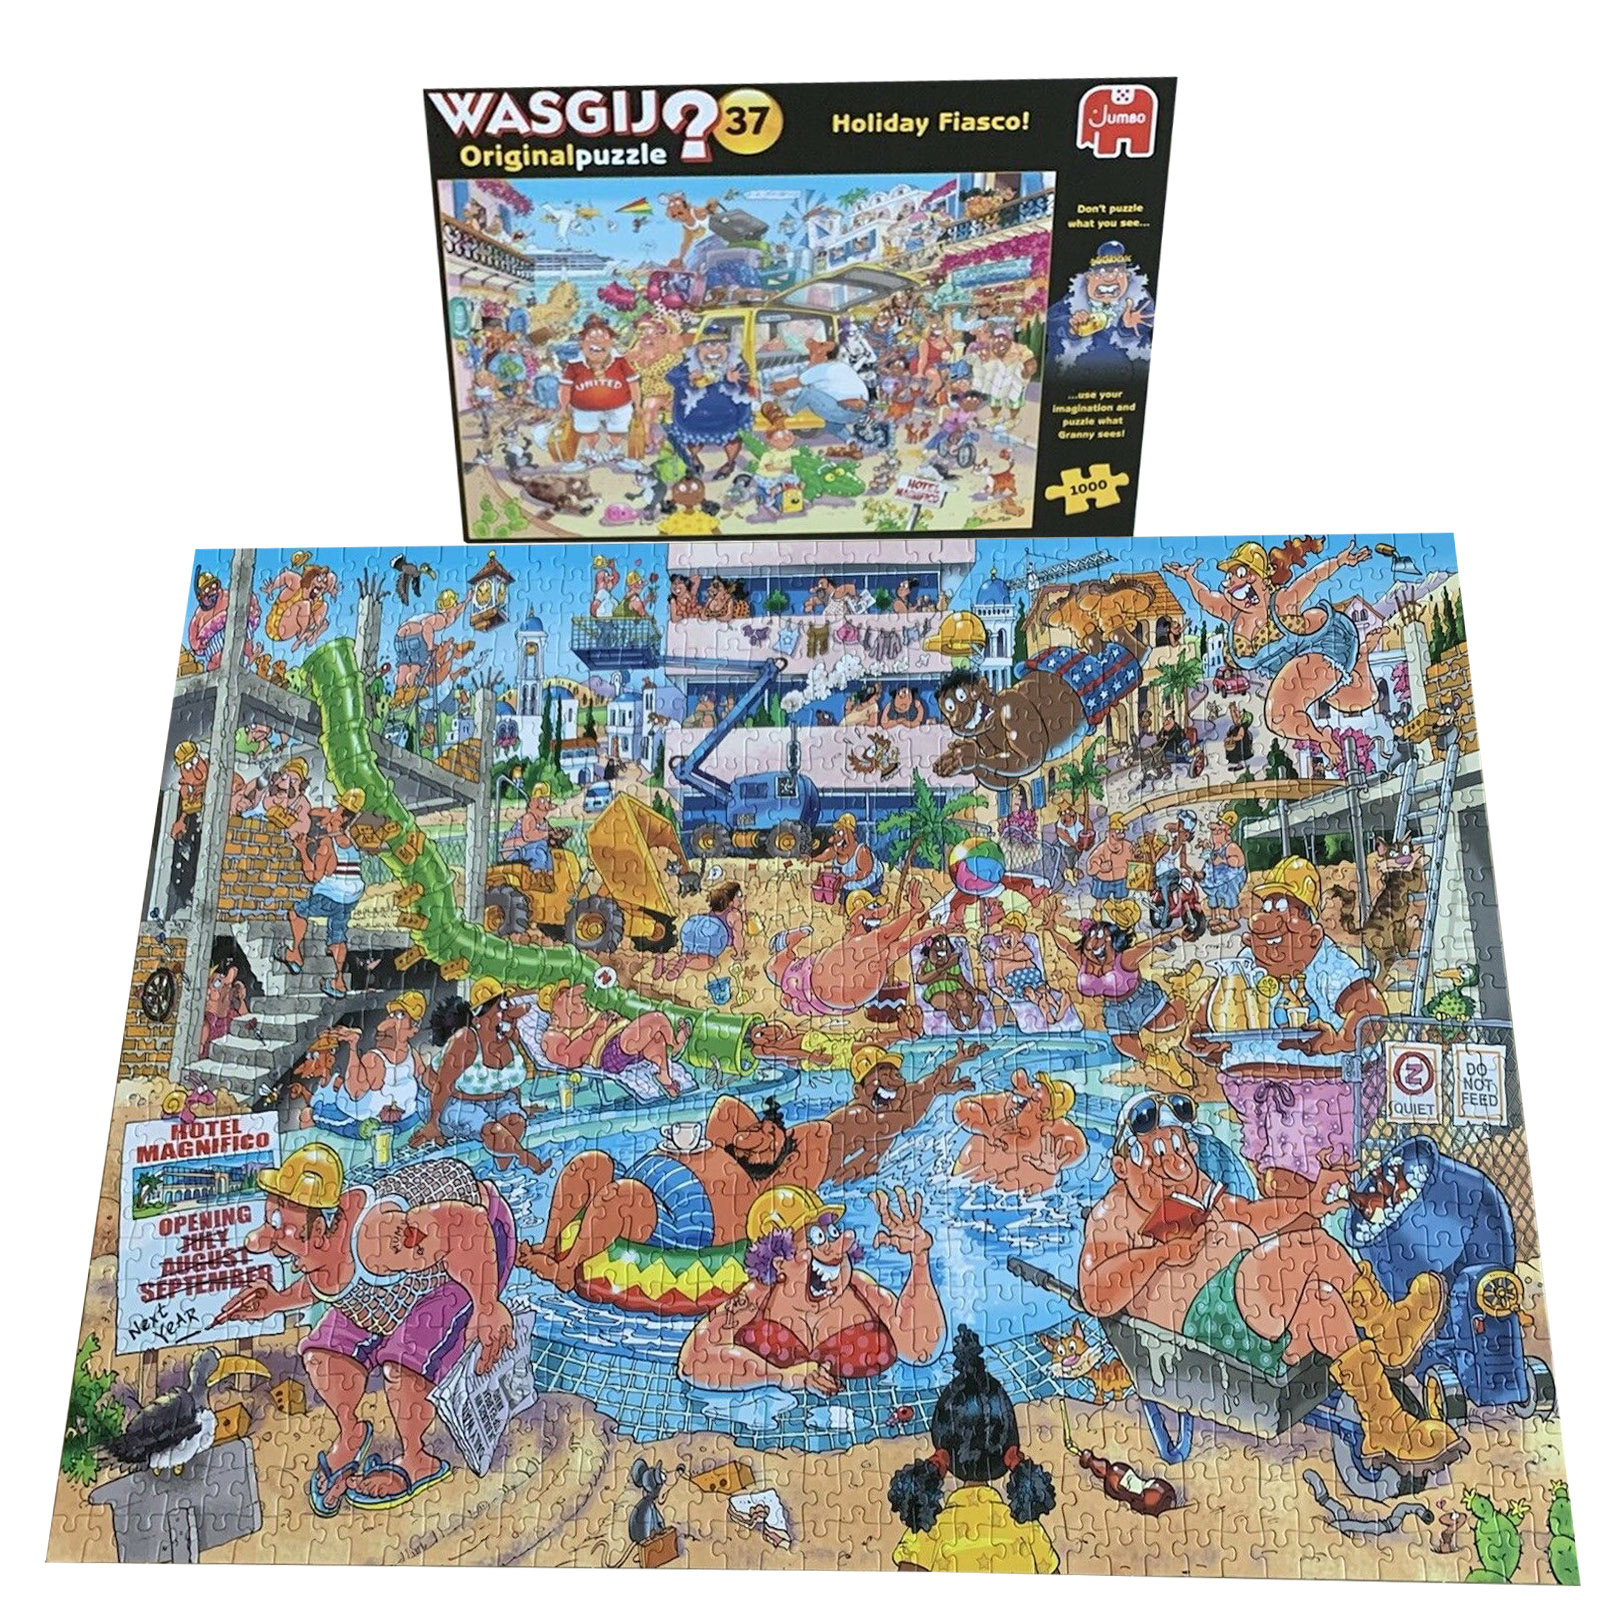 NEW Wasgij Original 37 Holiday Fiasco 1000 piece Jigsaw Puzzle